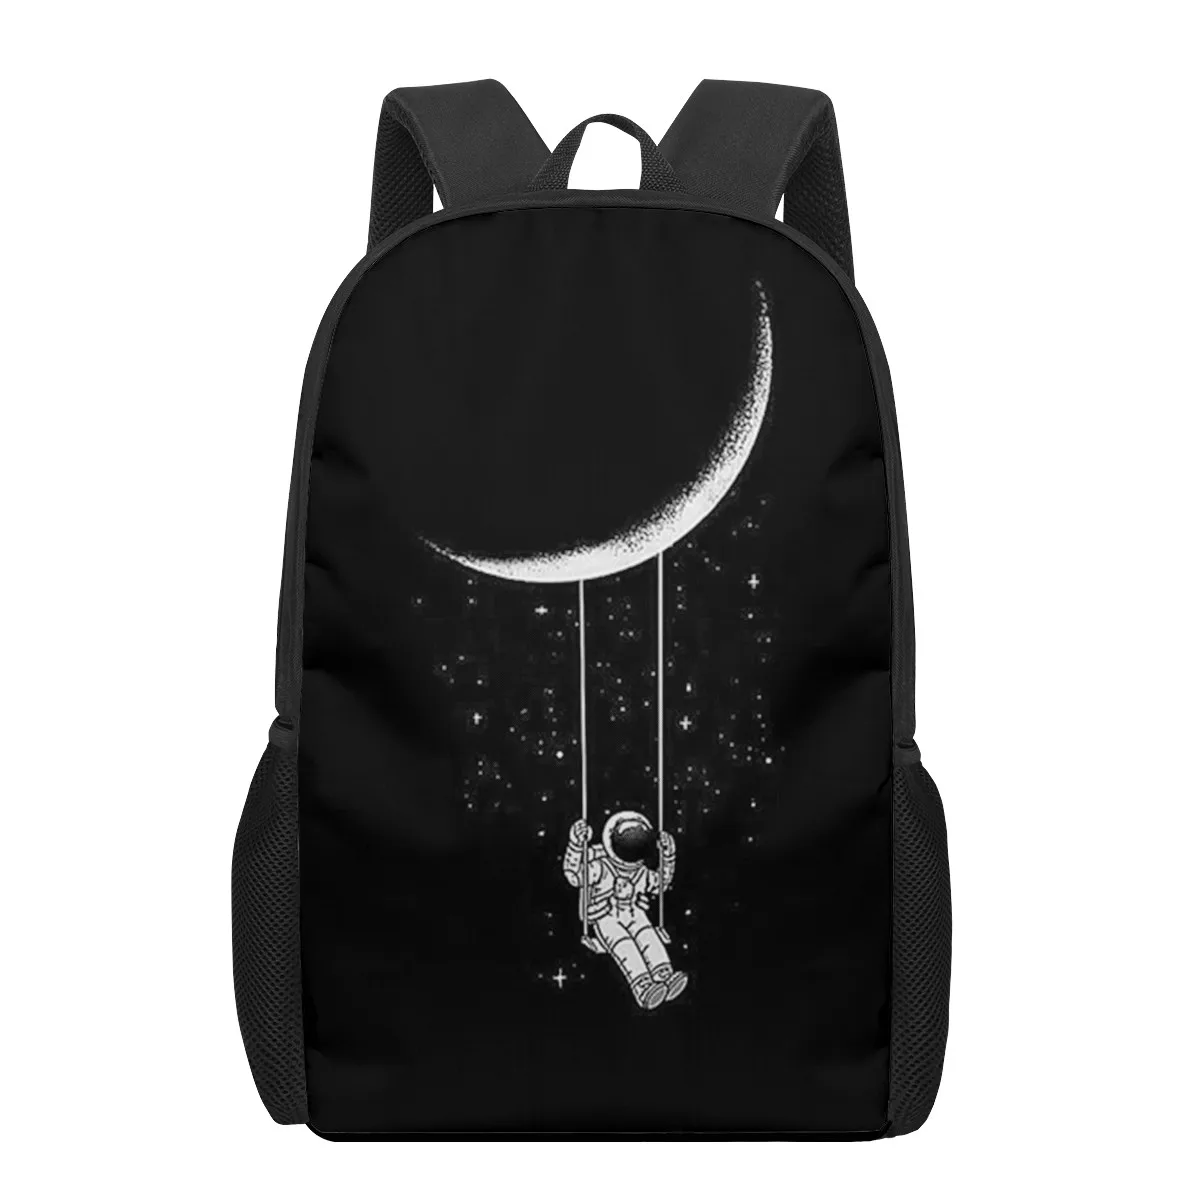 Artistic black white illustration 3D Pattern School Bag for Children Girls Boys Casual Book Bags Kids Backpack Boys Girls School